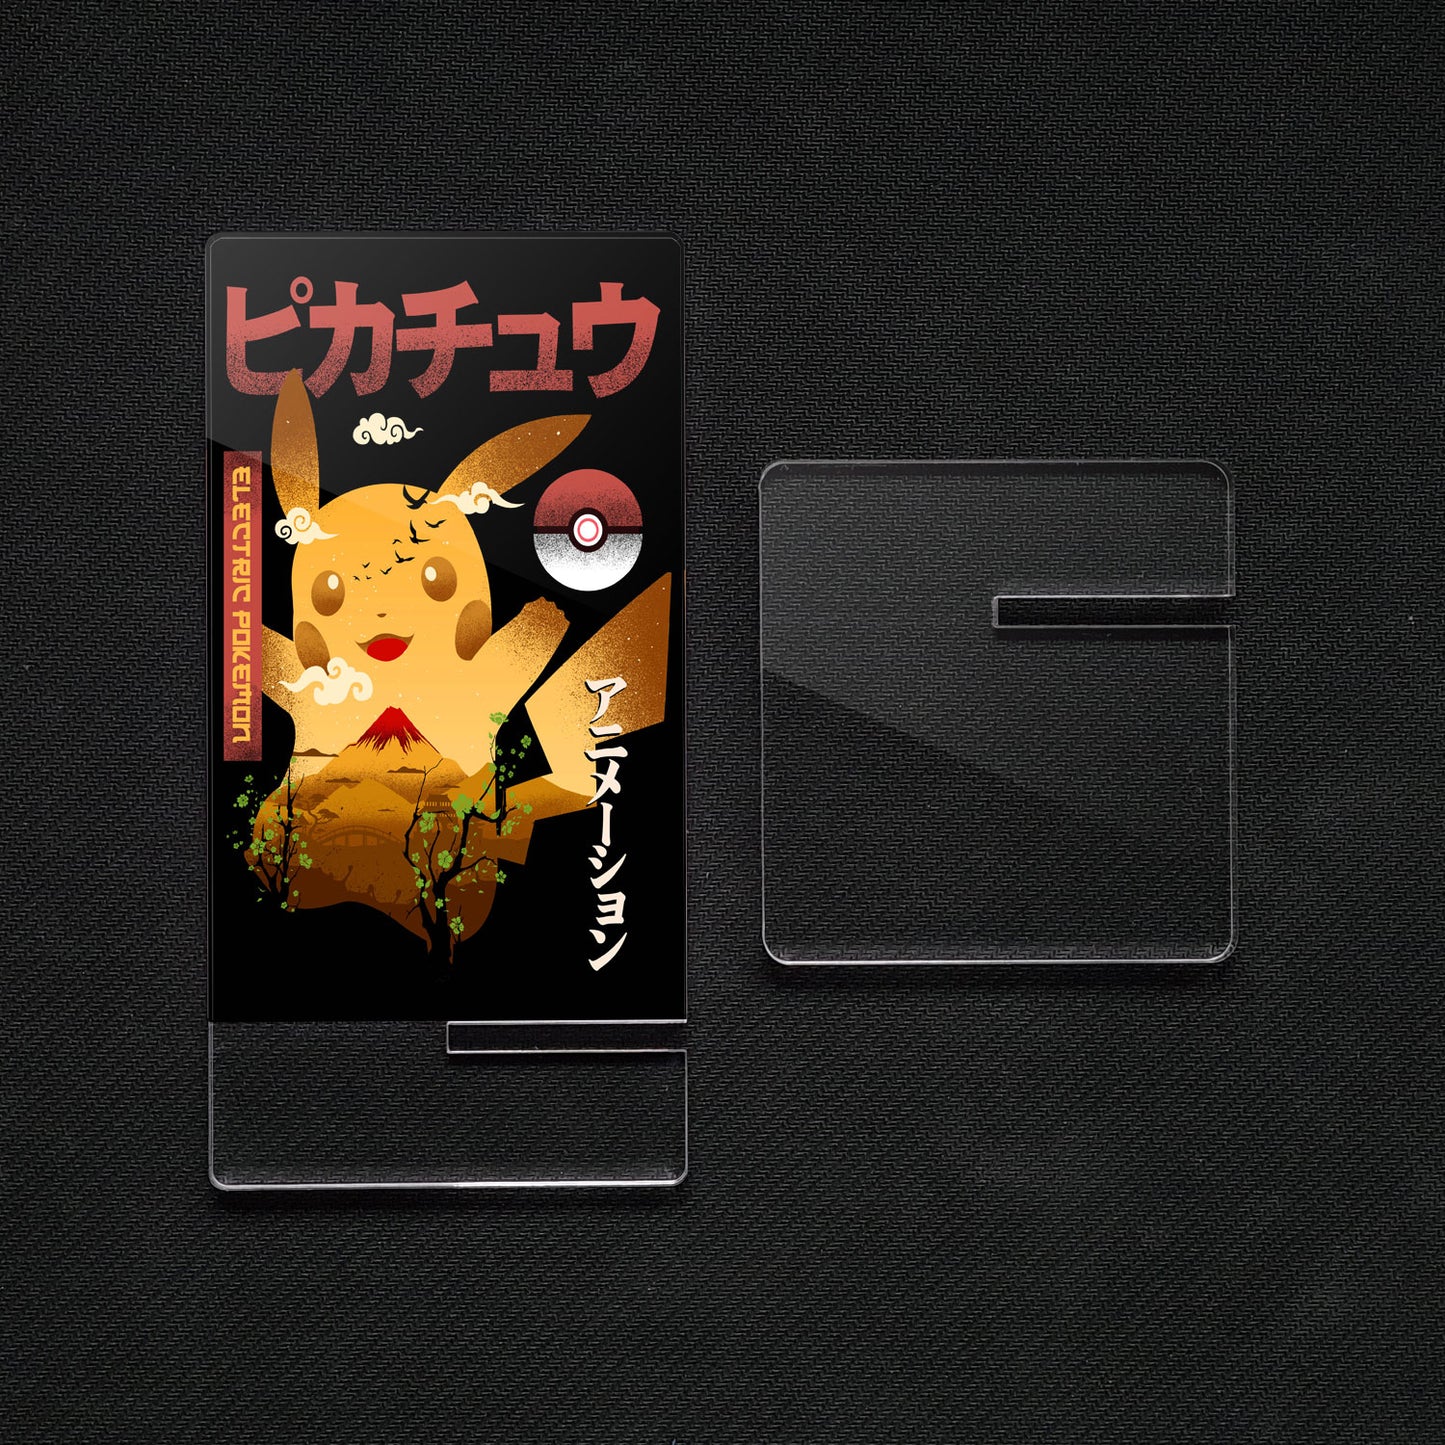 Soporte para Móvil de Pokémon Pikachu, de metacrilato